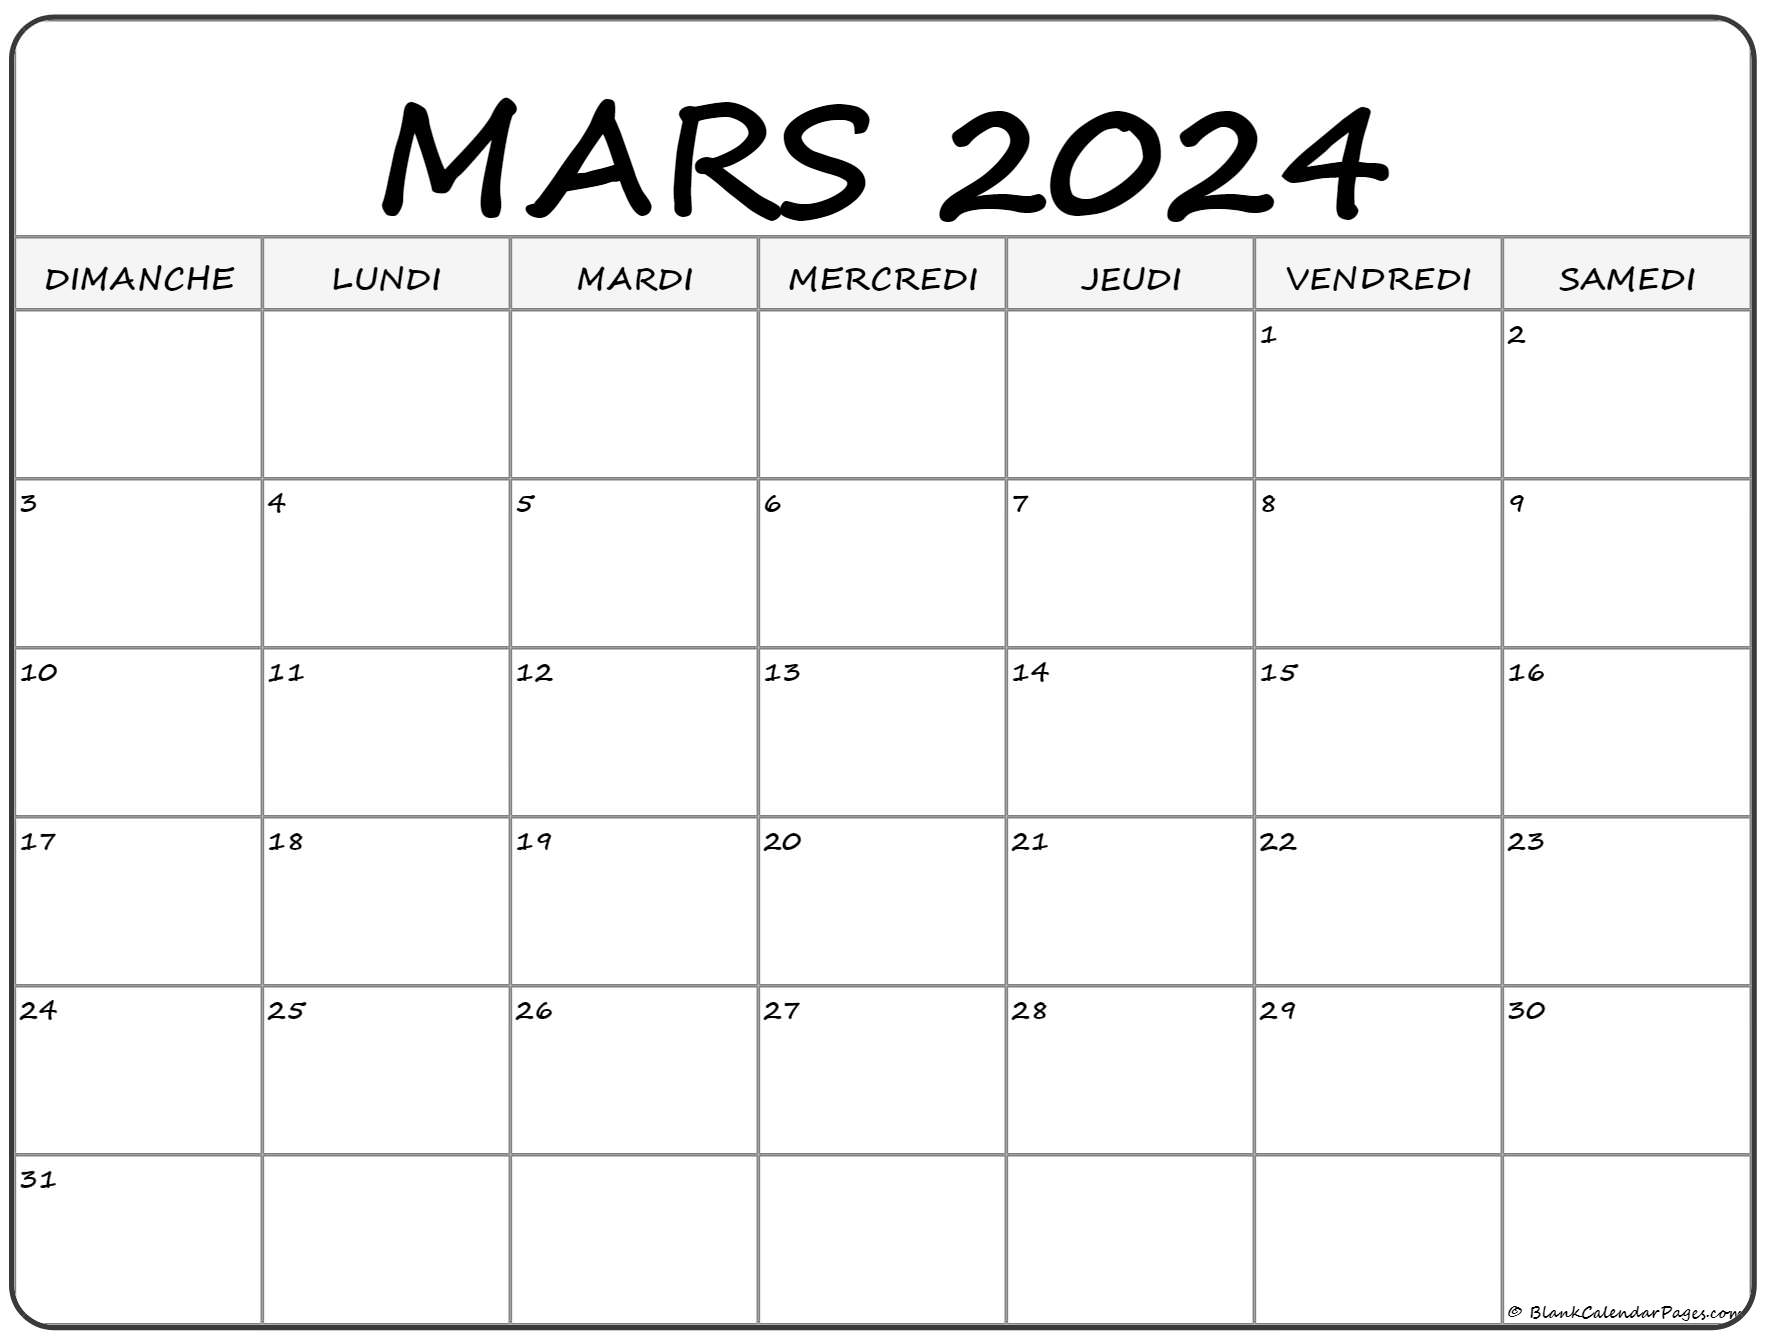 Calendrier Février Mars 2022 mars 2022 calendrier imprimable | Calendrier gratuit